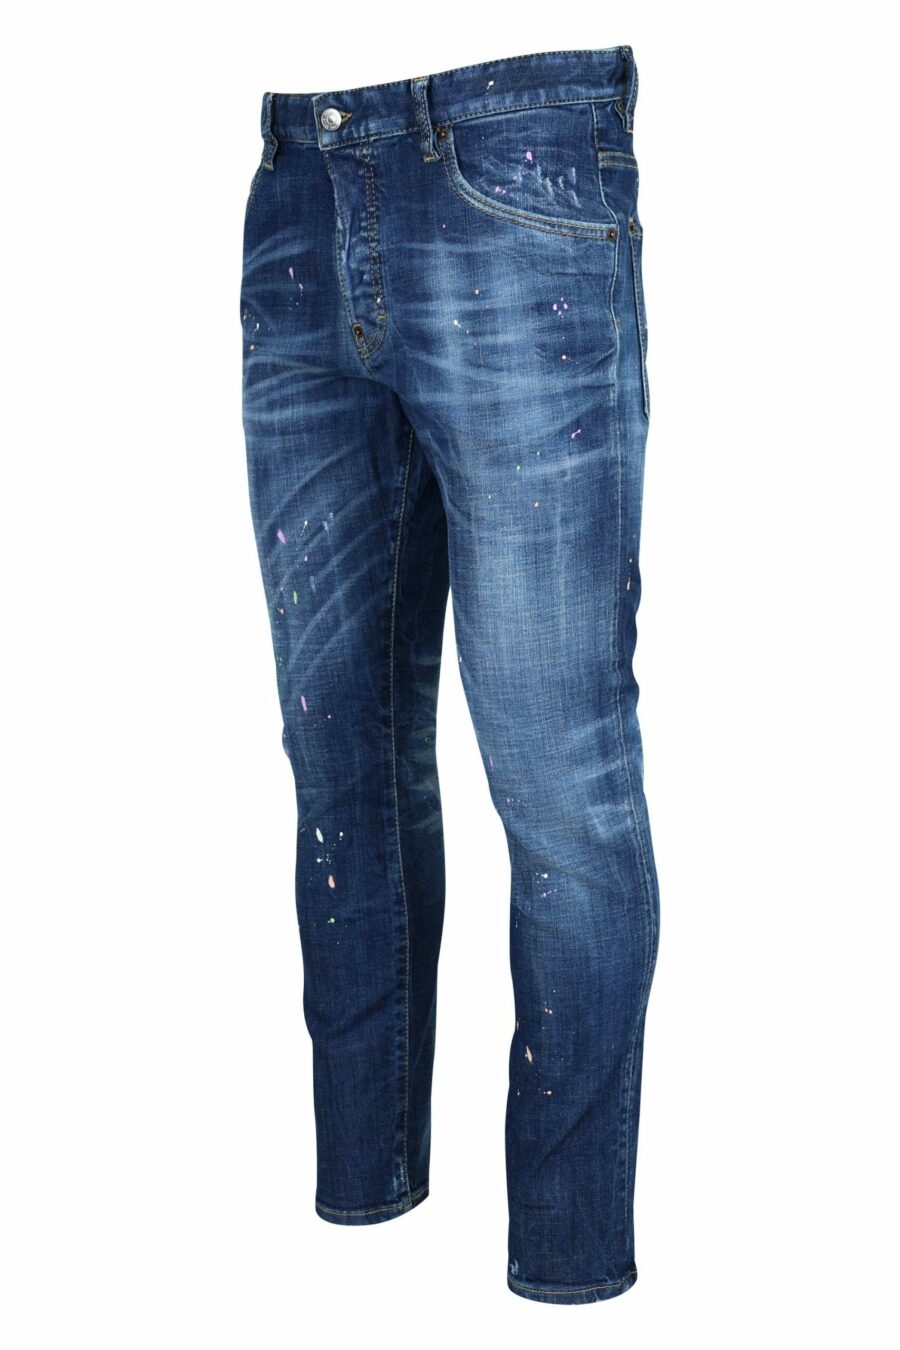 Jeans "skater jean" bleu foncé avec peinture blanche - 8054148527457 échelle 1